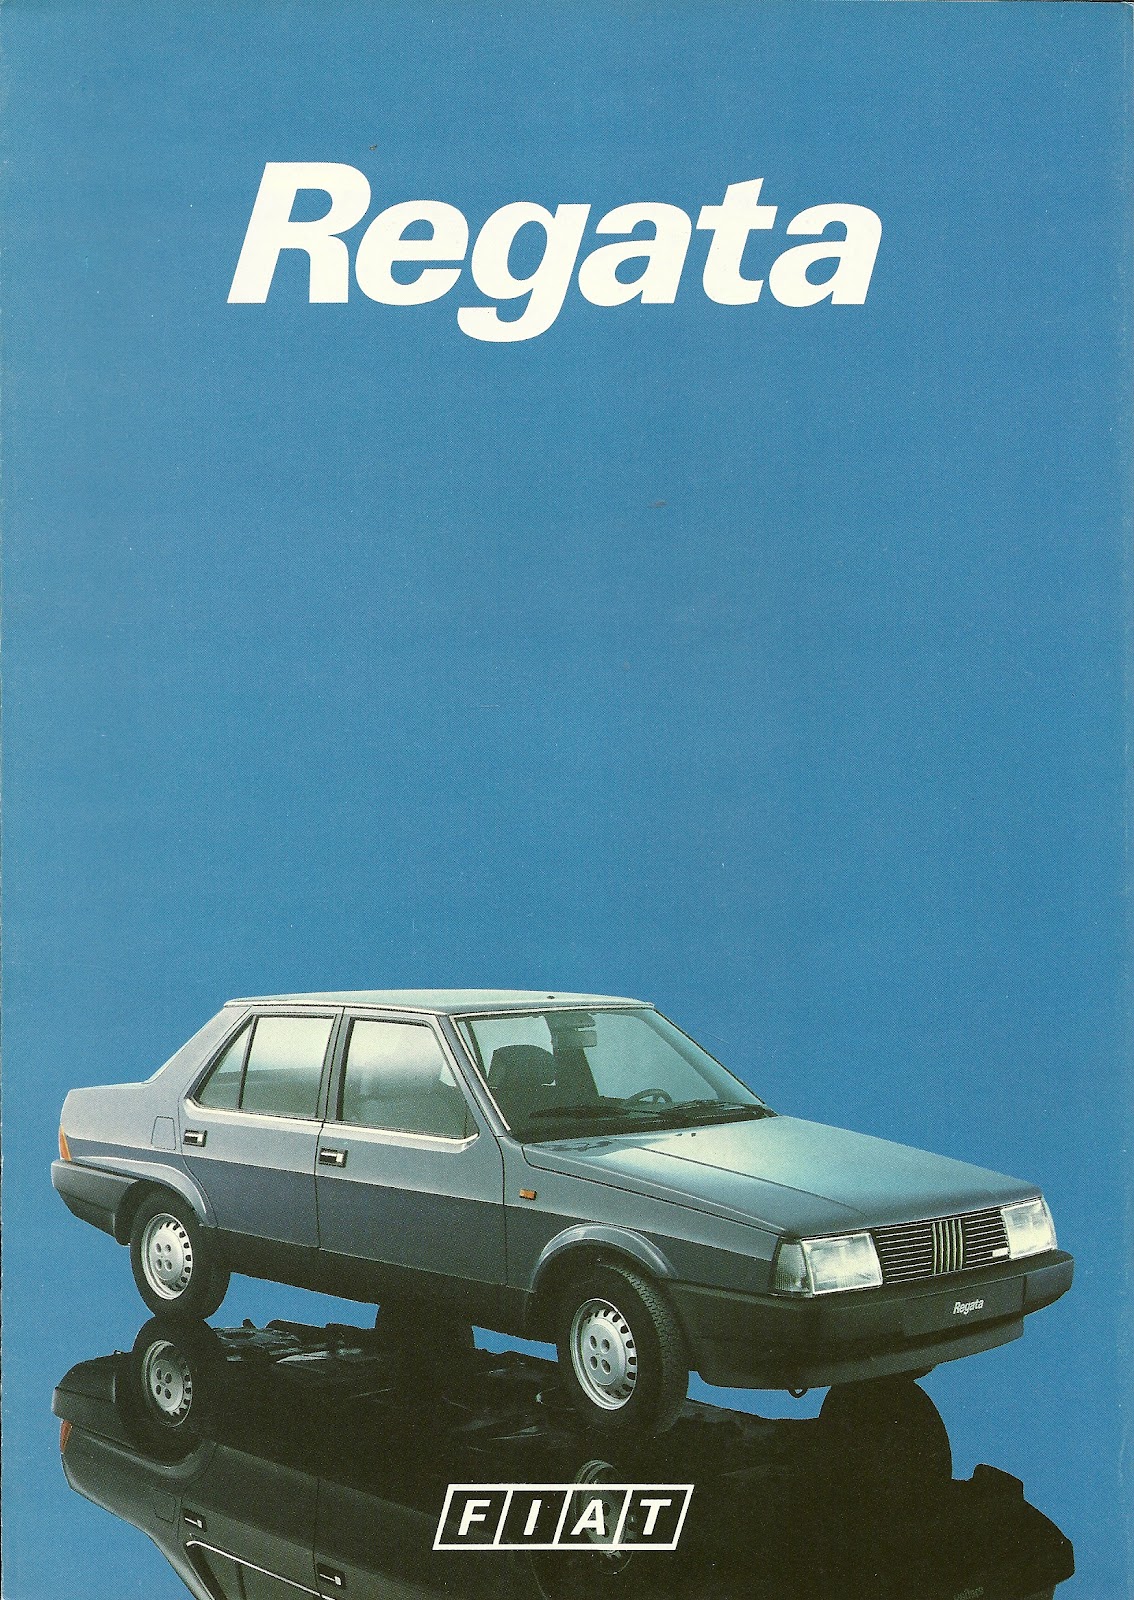 1983-Fiat-Regata.jpg